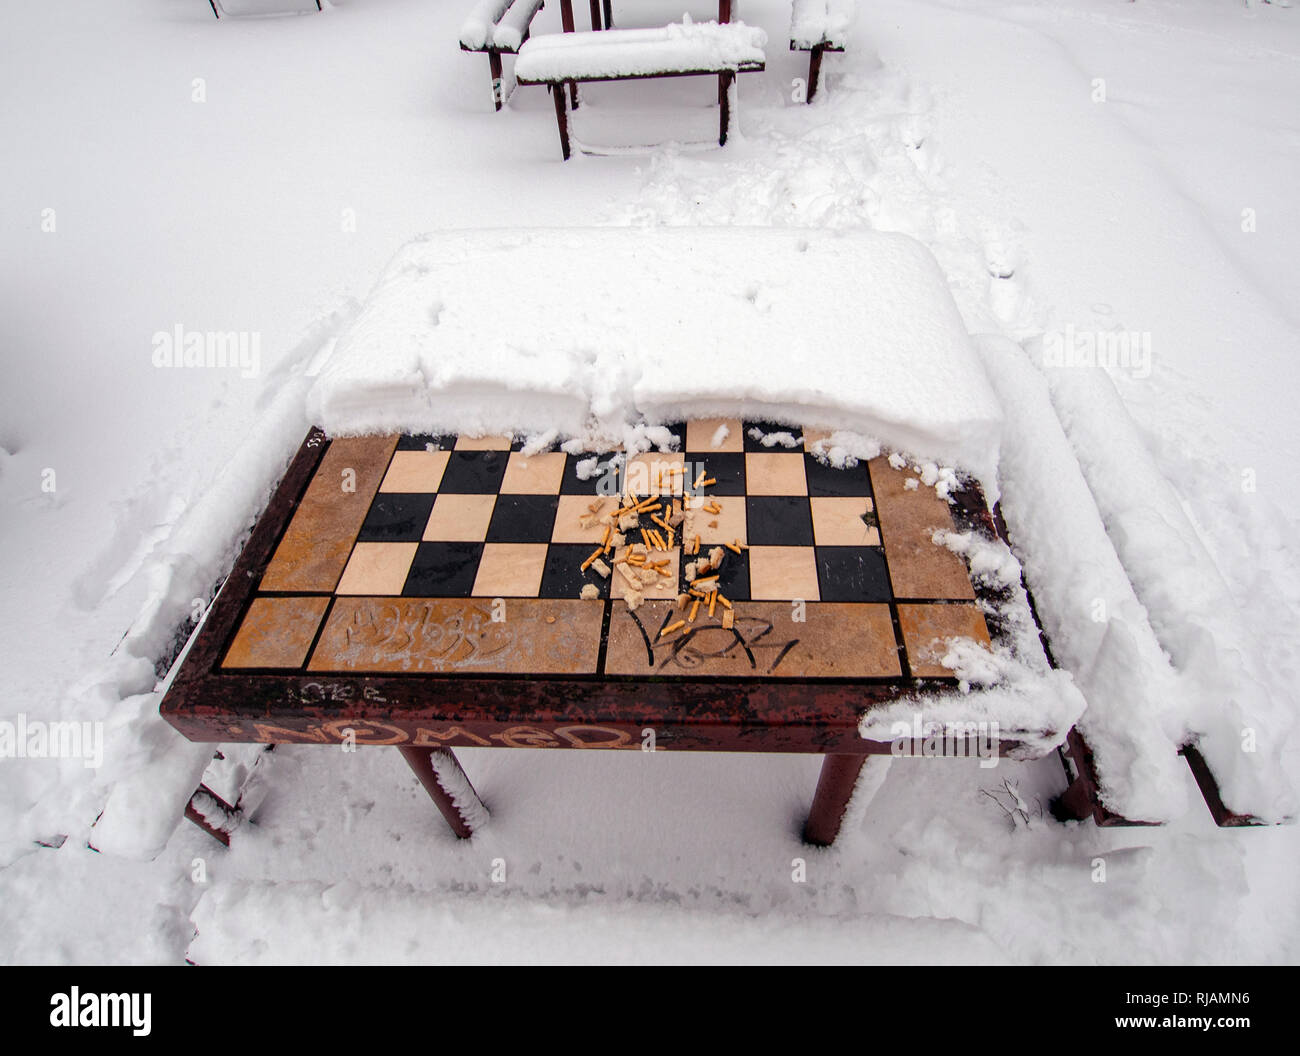 LODZ, Polonia- 4 de febrero de 2019: un tablero de ajedrez al aire libre cubierto de nieve. Foto de stock